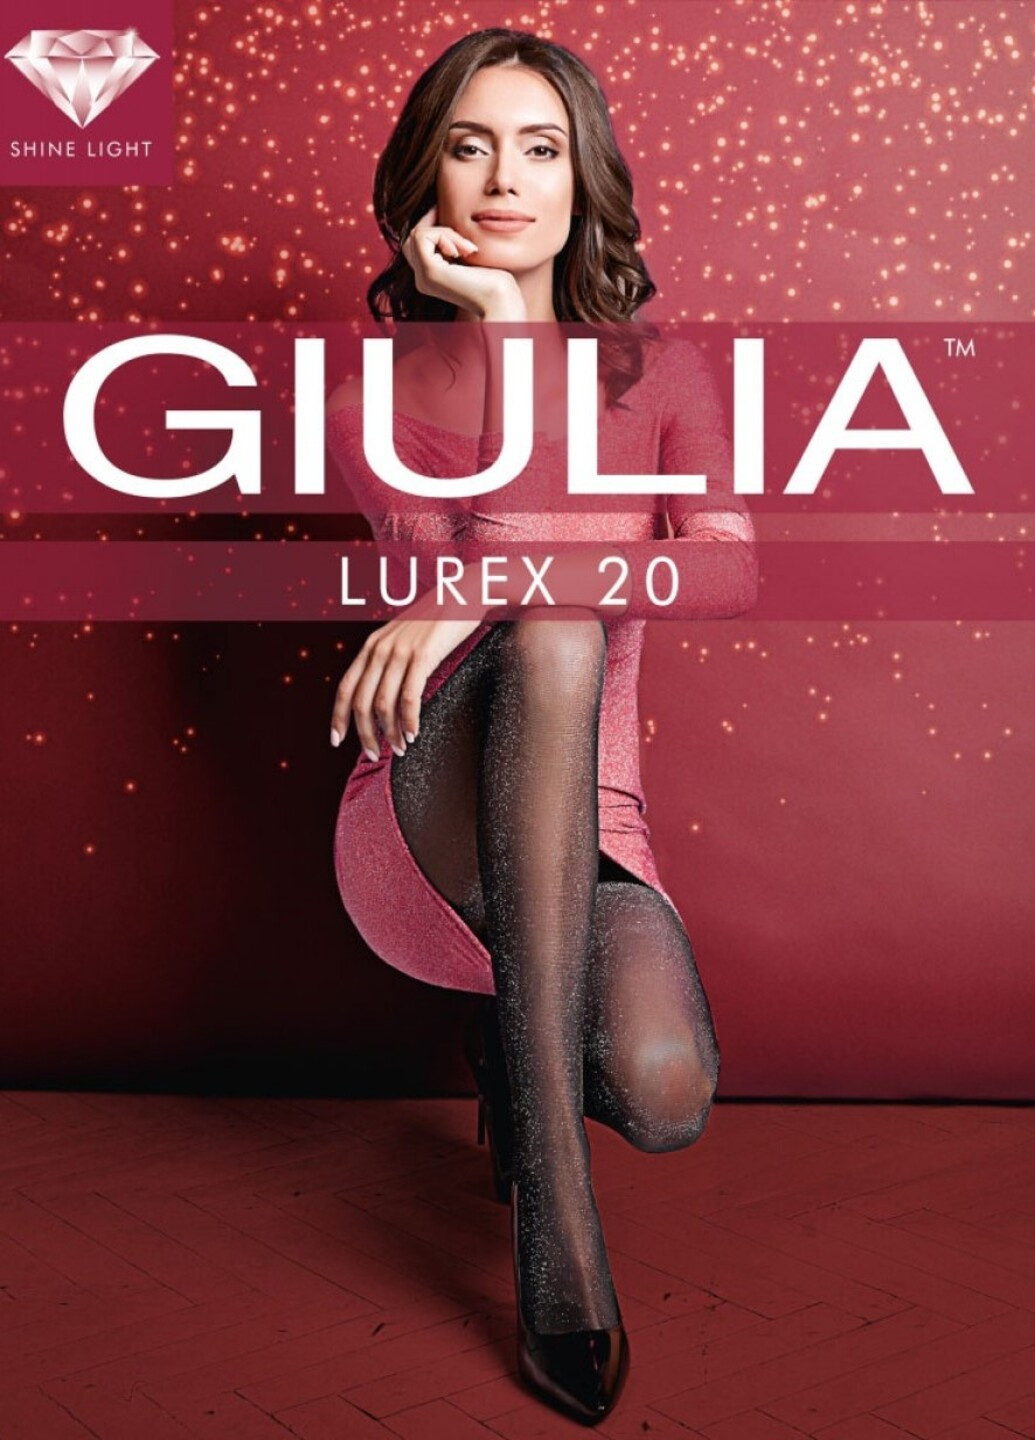 Колготки Giulia LUREX 20 (1) рисунки чёрные повседневные